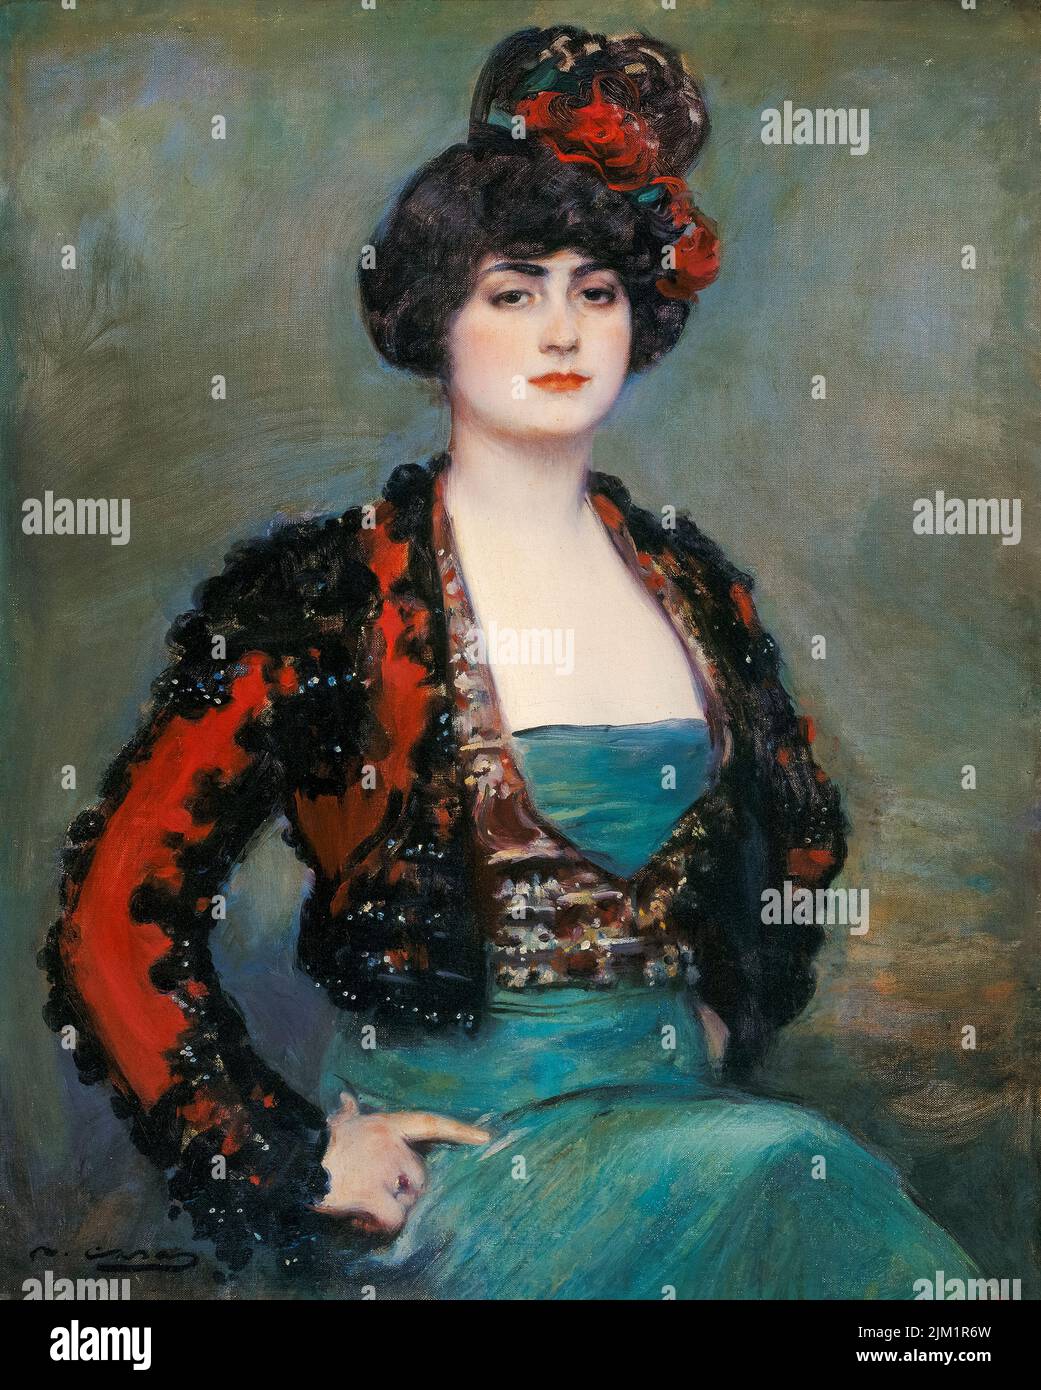 Ramon Casas portrait painting, Julia, (Júlia Peraire i Ricarte, 1888-1941, épouse de l'artiste), huile sur toile, vers 1915 Banque D'Images